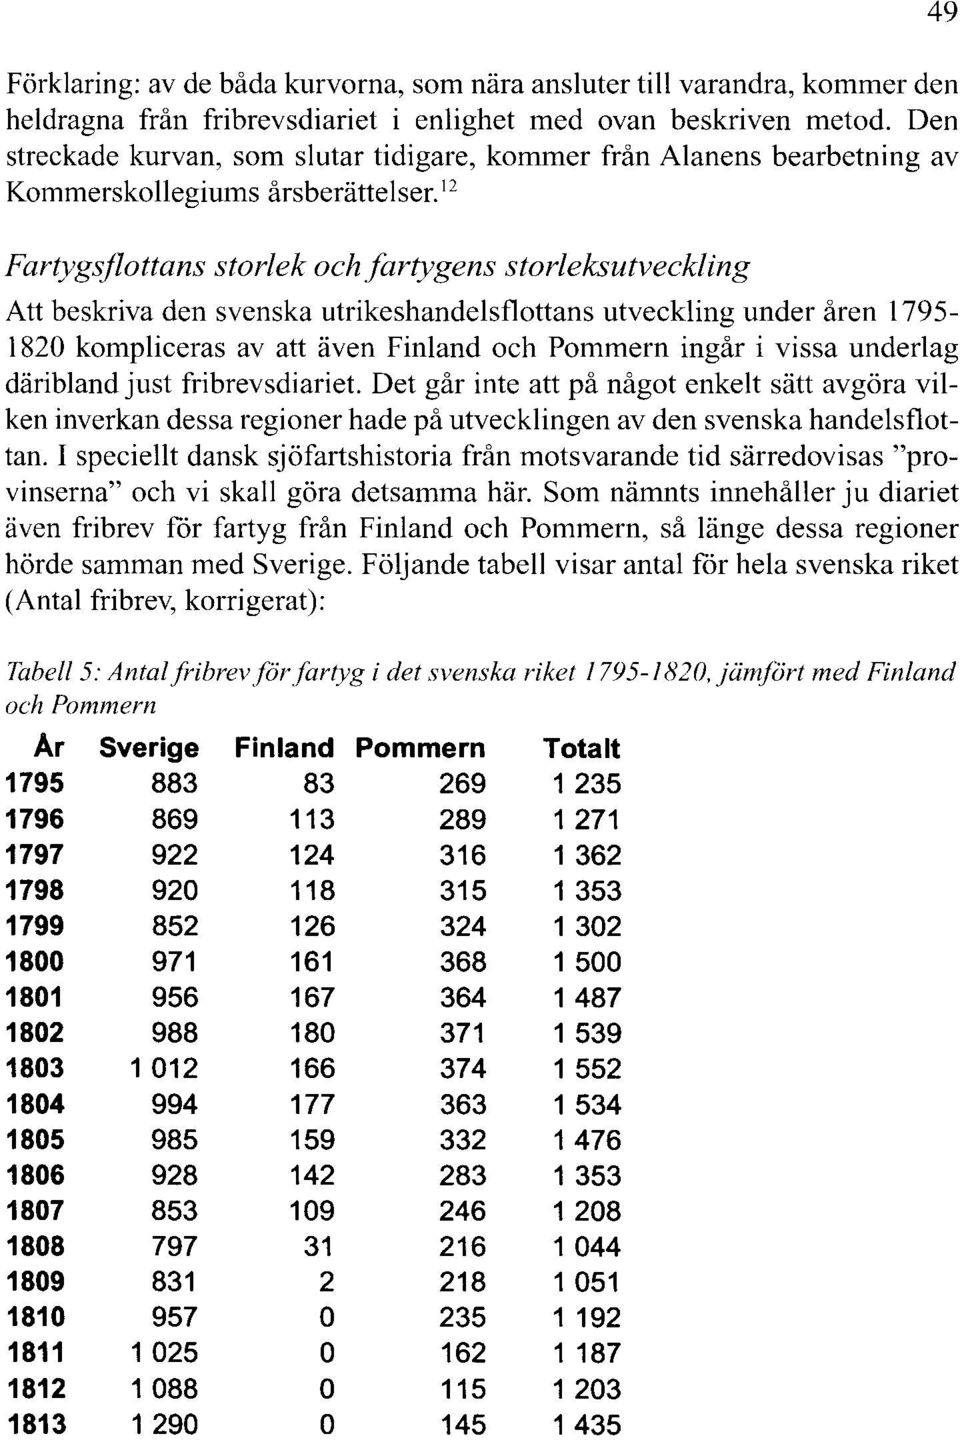 12 Fartygsflottans storlek och fartygens storleksutveckling Att beskriva den svenska utrikeshandelsflottans utveckling under åren 1795-1820 kompliceras av att även Finland och Pommern ingår i vissa